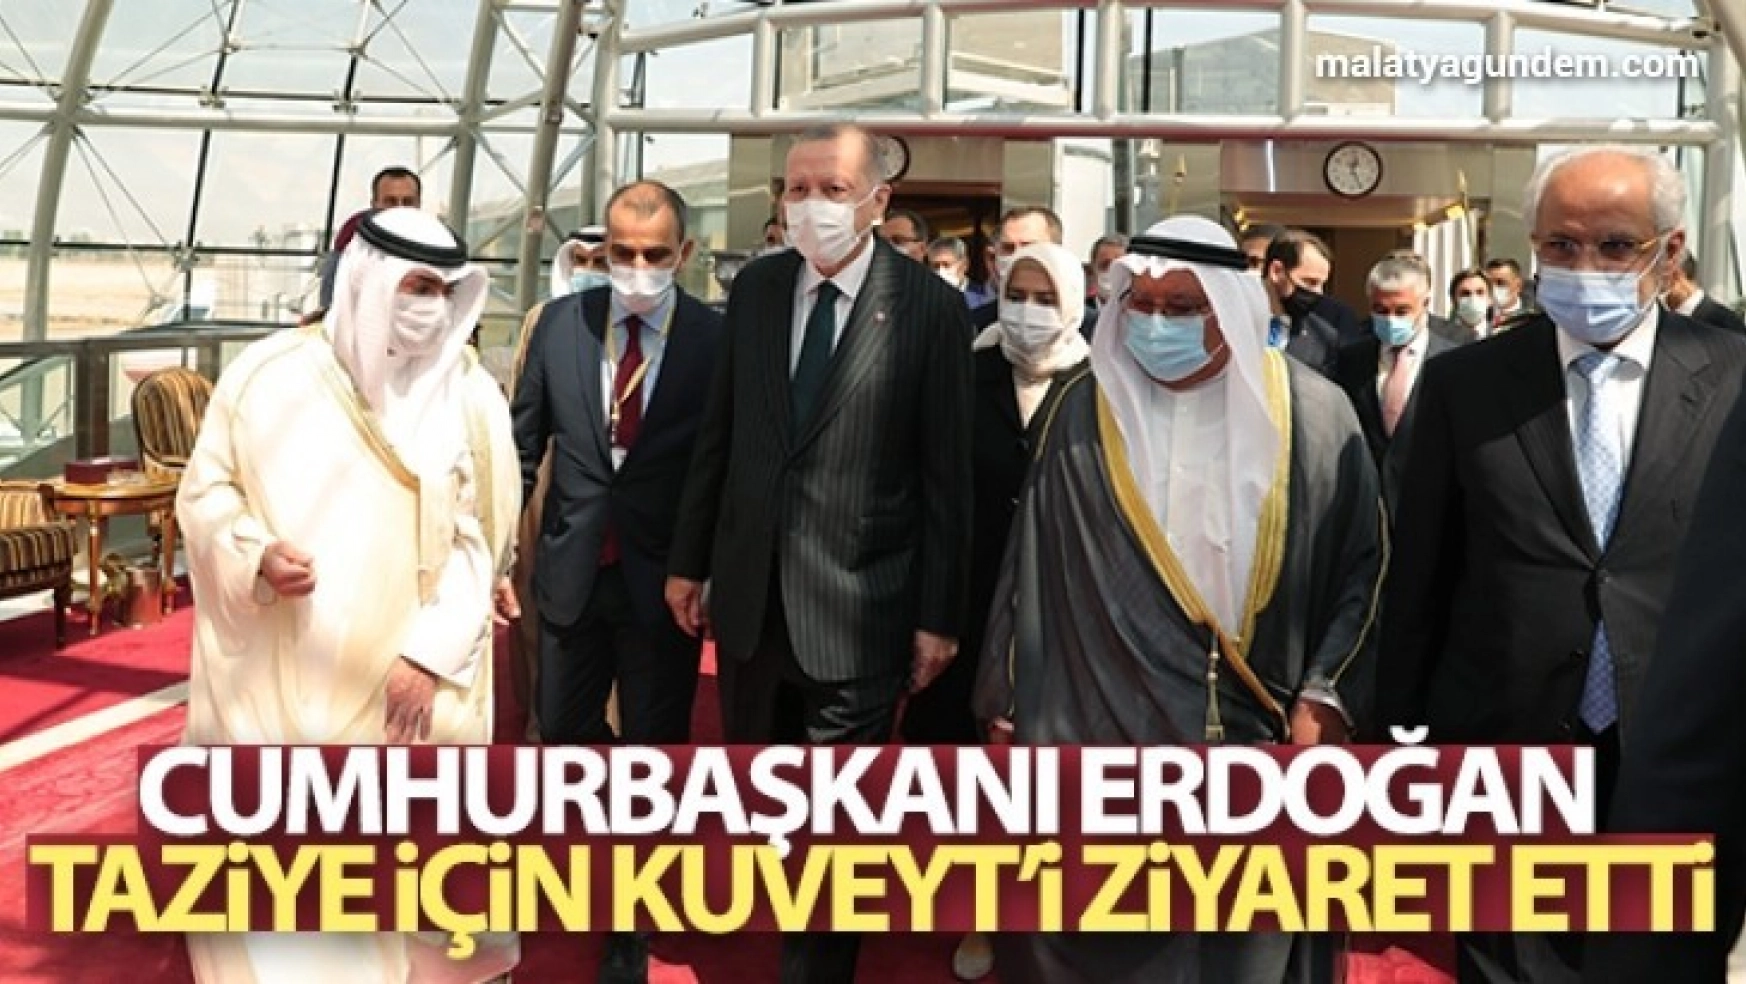 Cumhurbaşkanı Erdoğan, Kuveyt'te